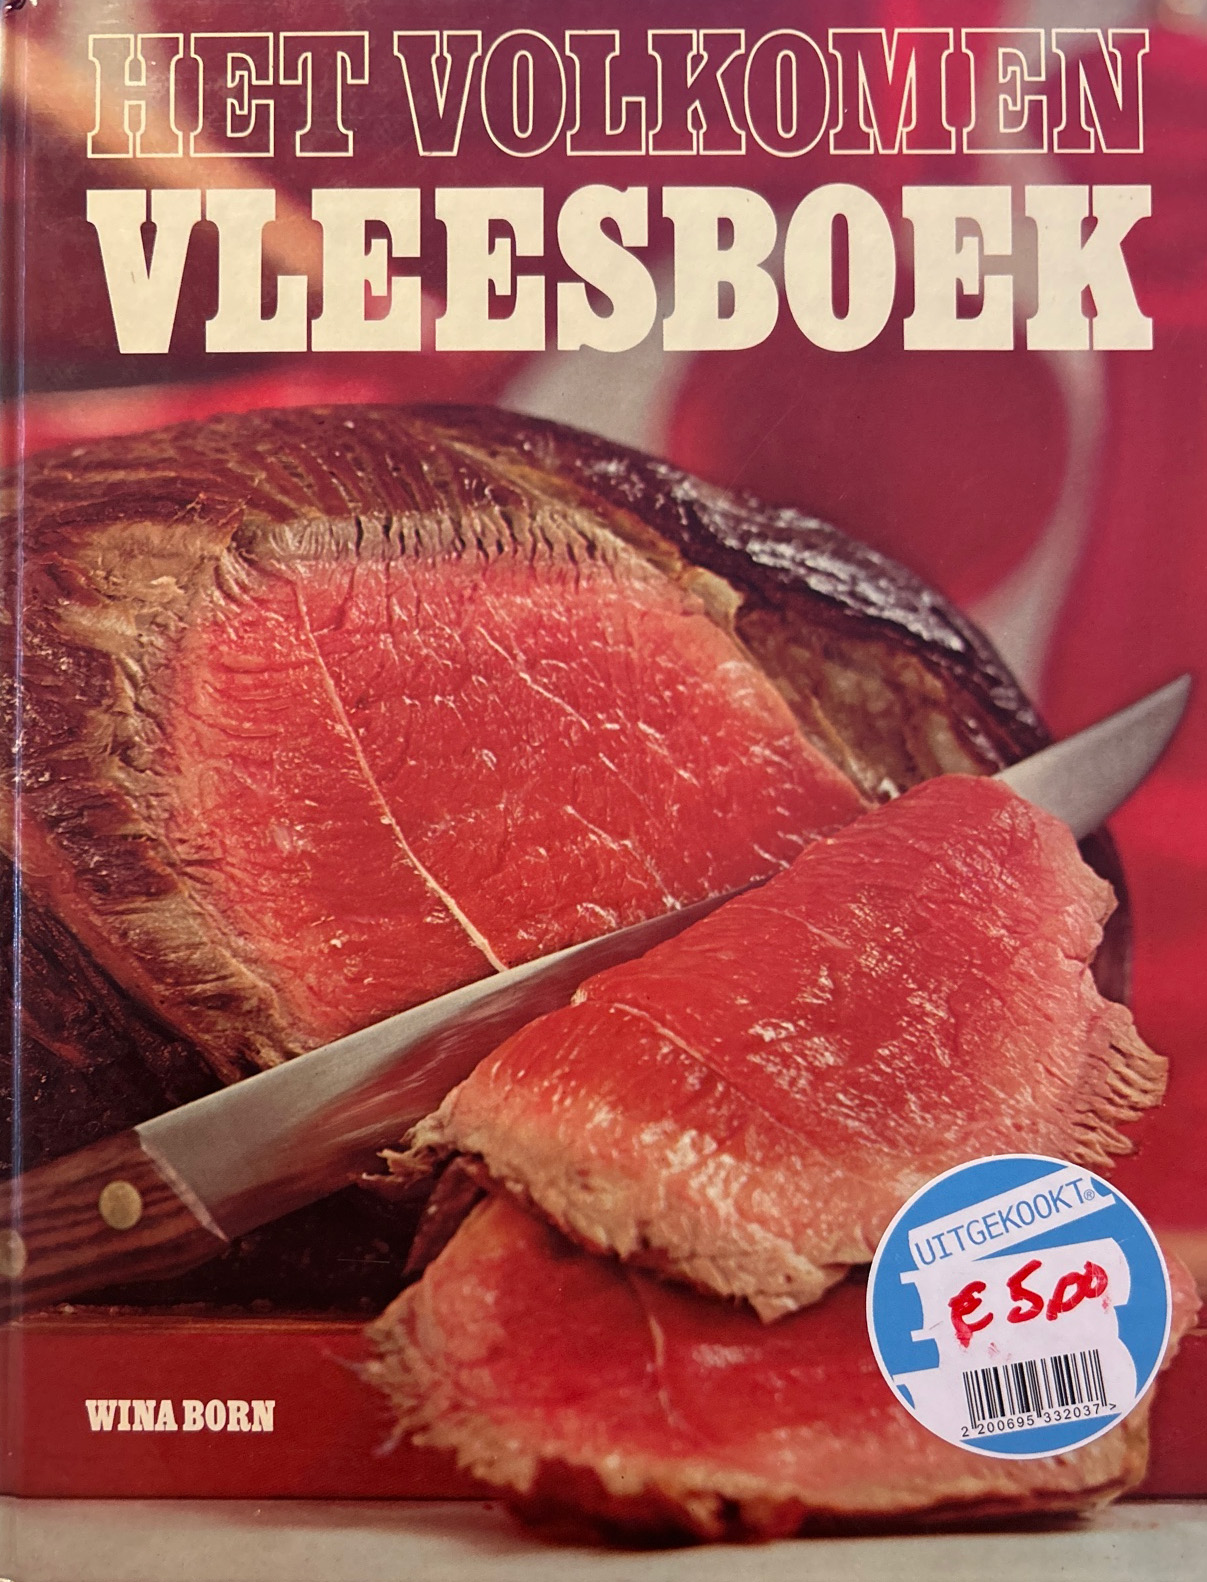 Het volkomen vleesboek – Wina Born